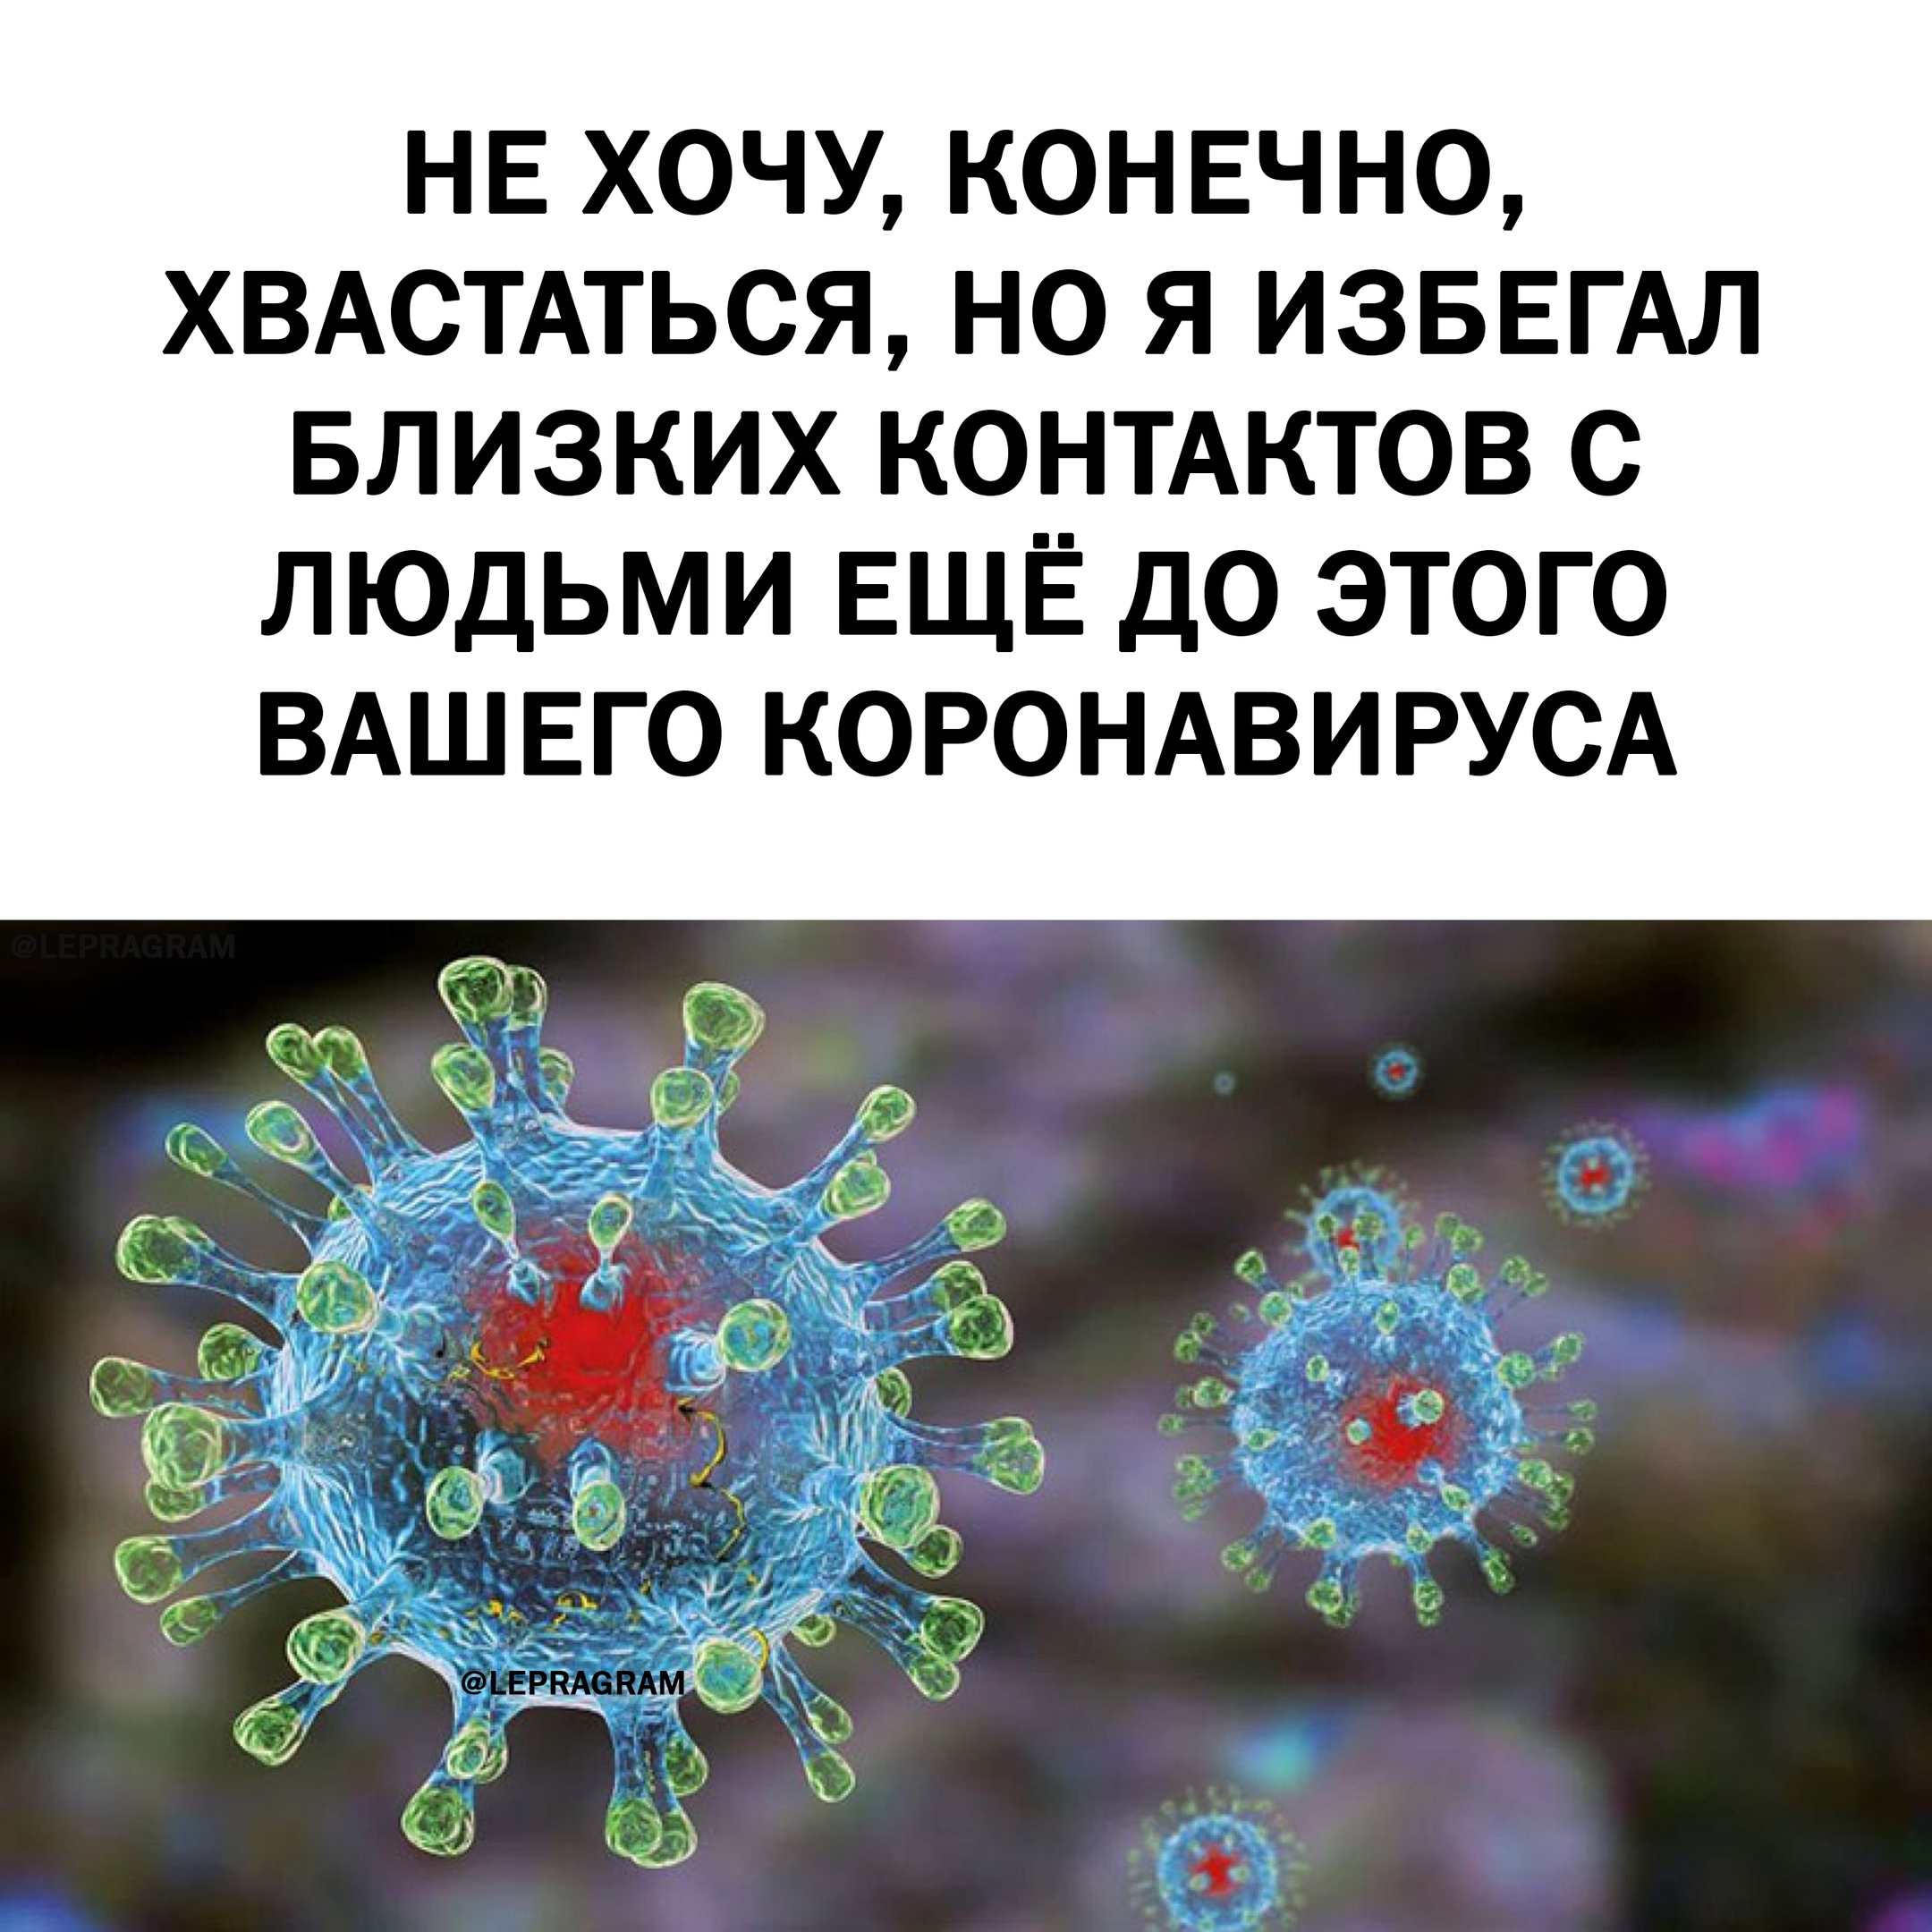 Прикольная картинка со словами о коронавирусе